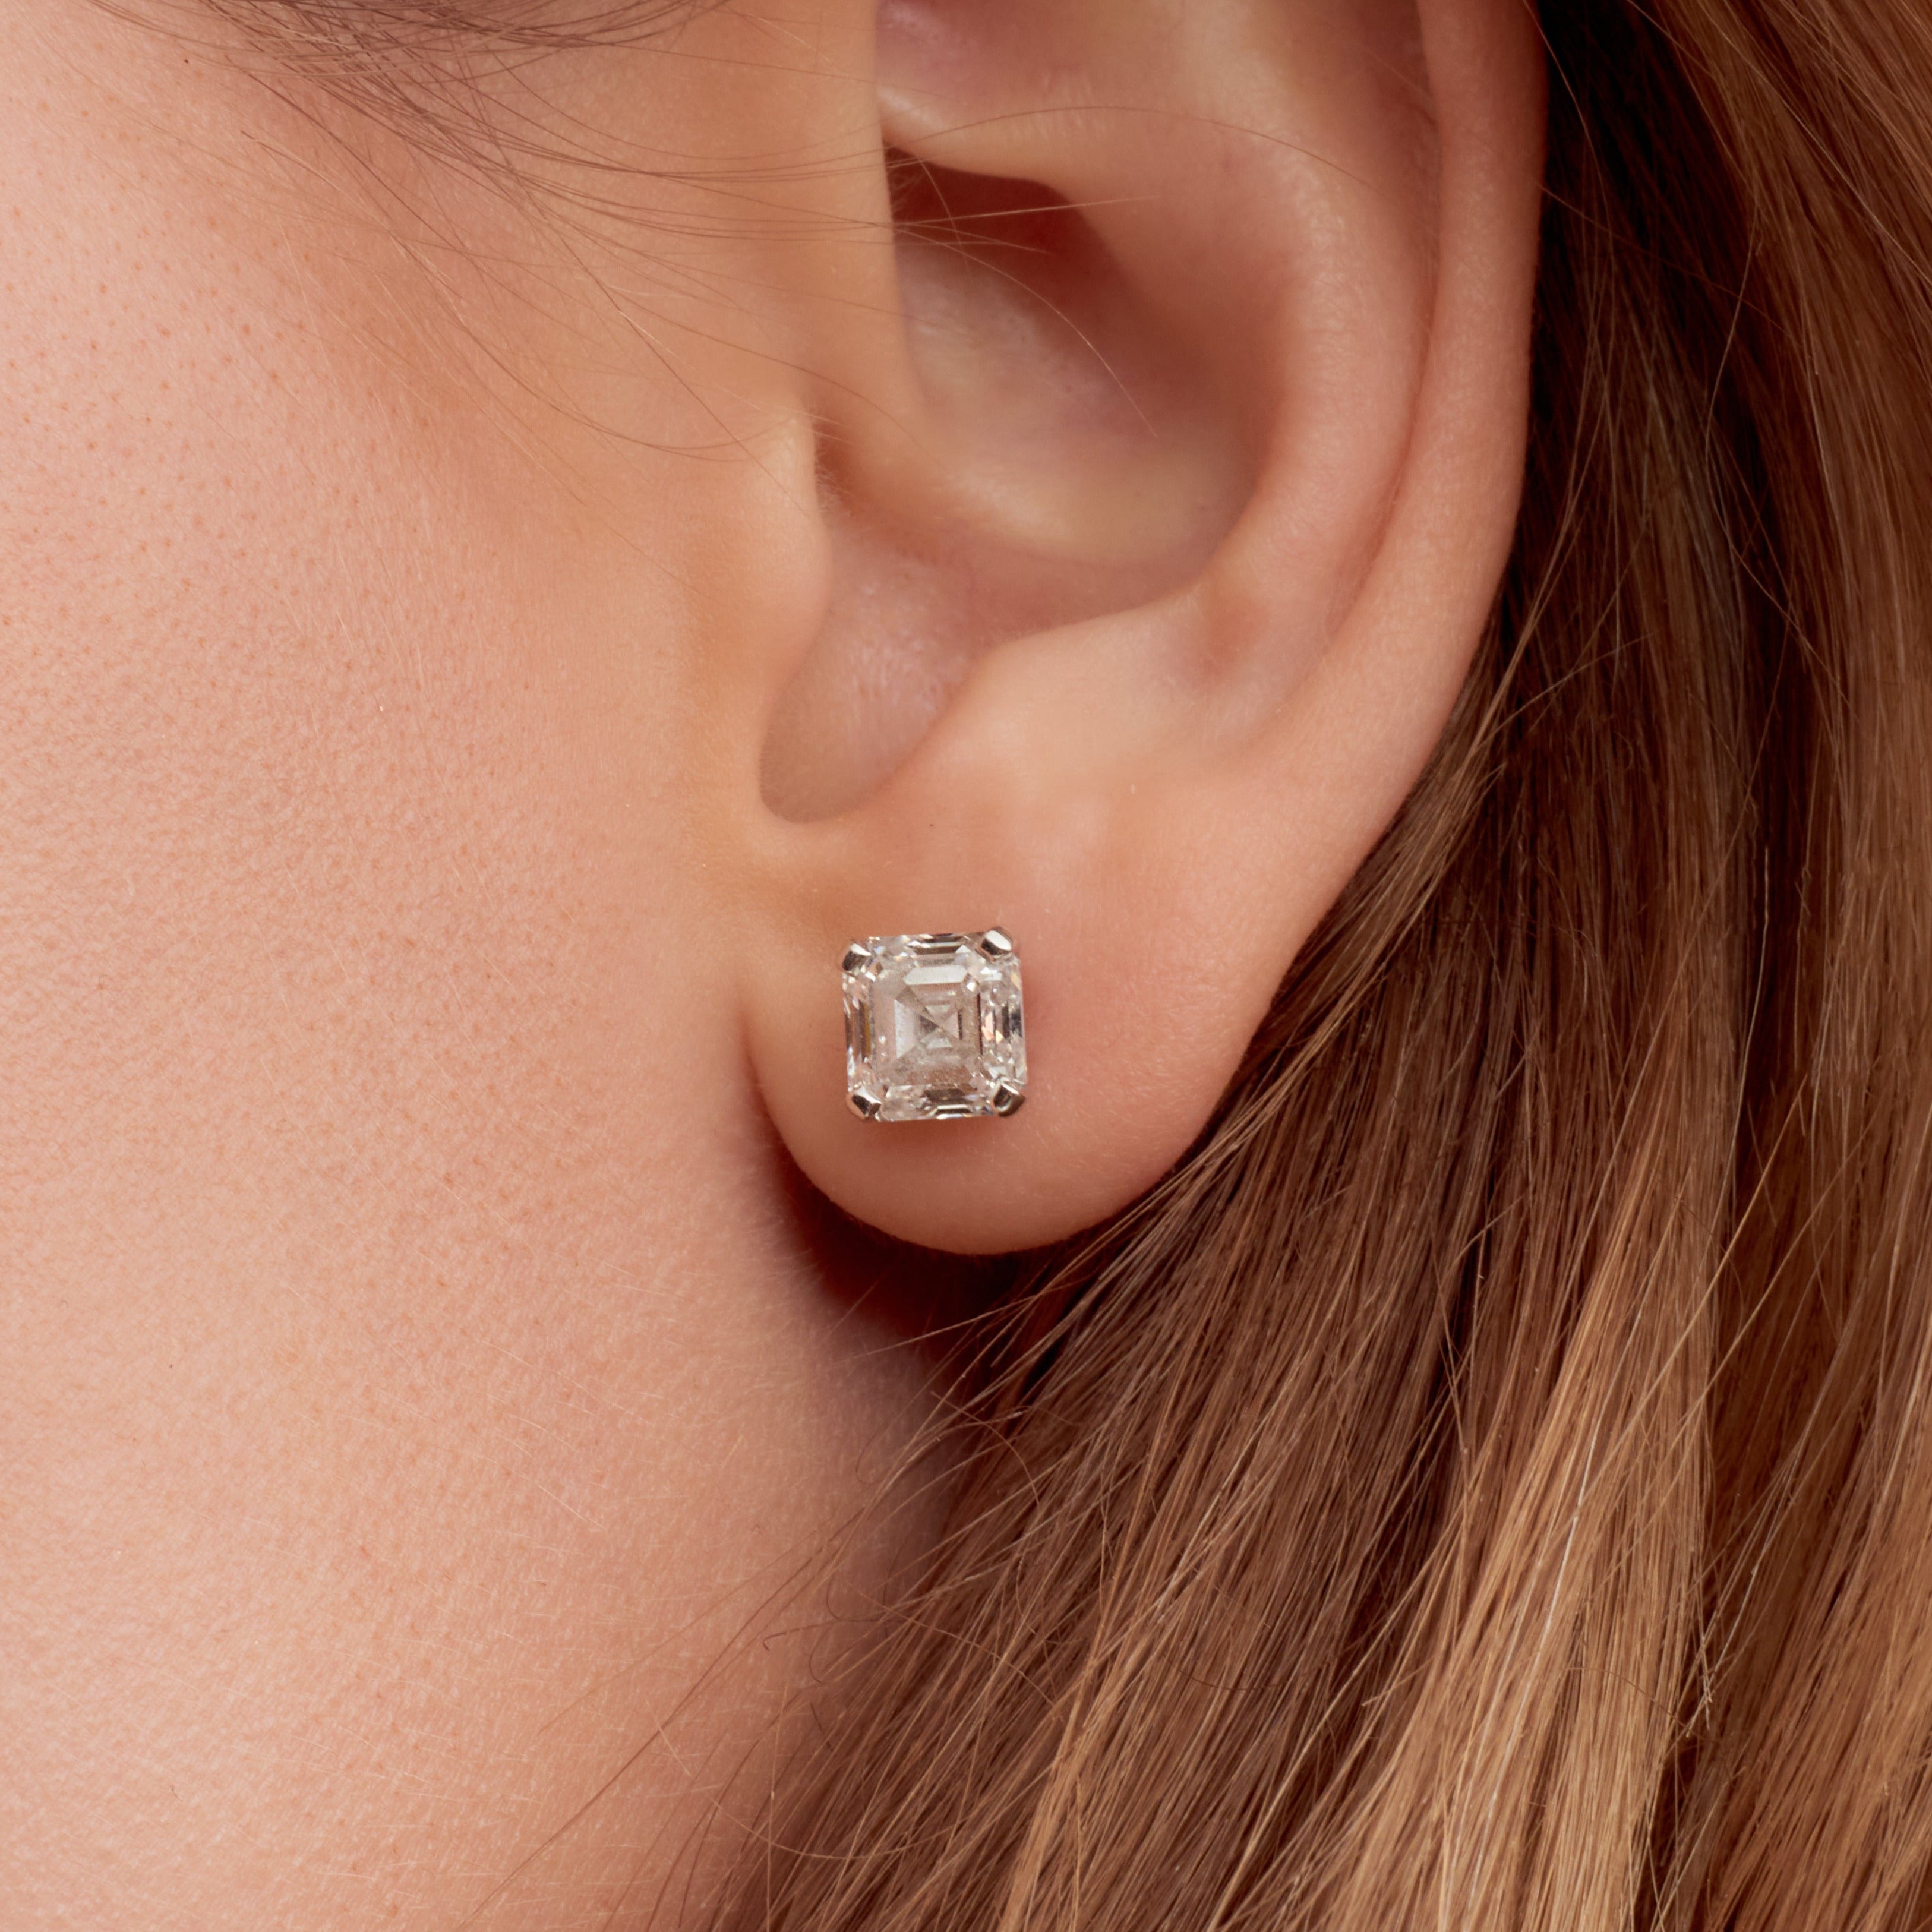 4 CT Asscher Cut Diamond Stud Earrings in Platinum